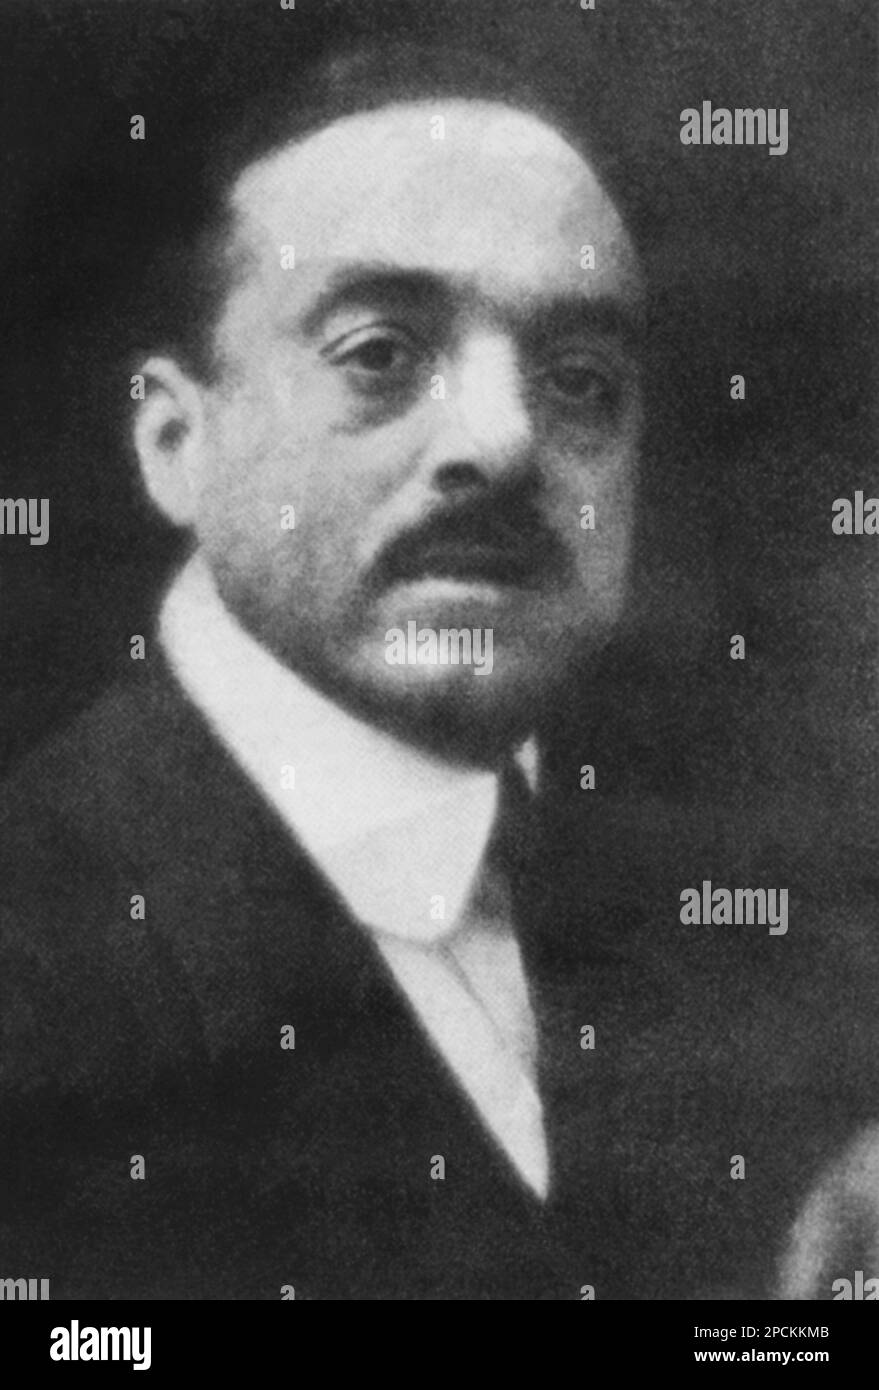 1915 ca , Milano , ITALY : The italian Avantgarde artist CARLO Carrà  ( 1881 - 1966 )  - FUTURISM - FUTURISTA - FUTURIST - STORIA DELL' ARTE  - ARTS - AVANGUARDIA  - portrait - ritratto - baffi - CARRA' - moustache ----  Archivio GBB Stock Photo